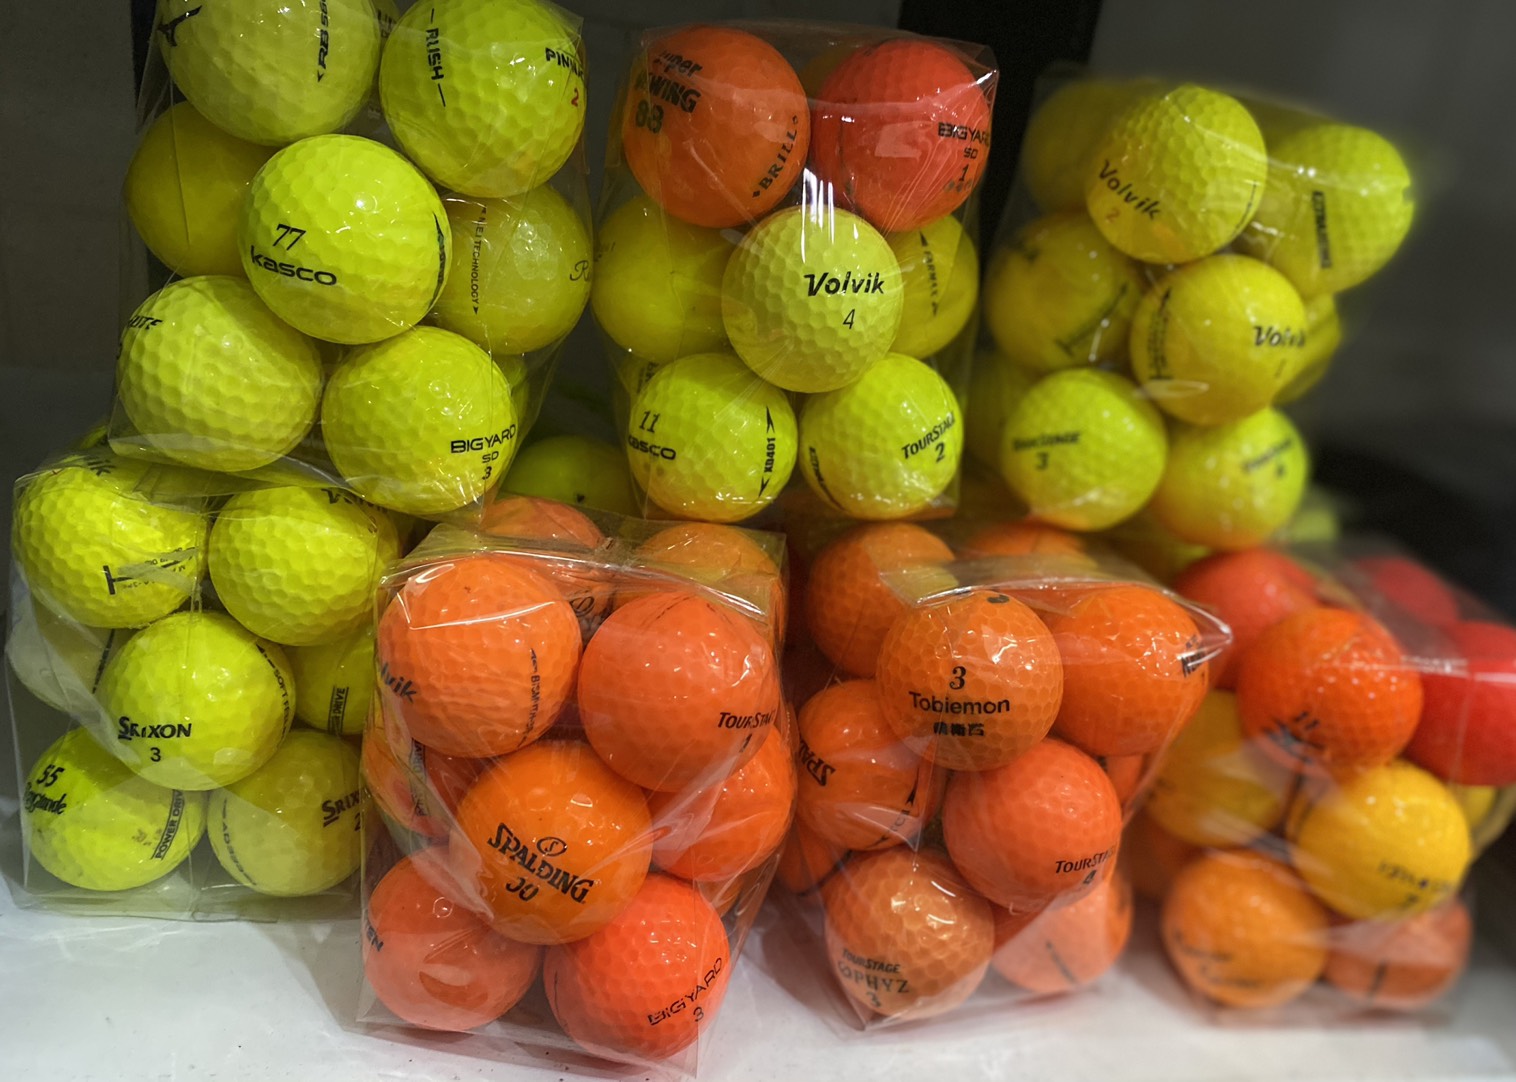 ลูกกอล์ฟ ลูกสี golf golfball Color คละยี่ห้อ คละรุ่น 12 ลูก 1 โหลละ 150 บาท